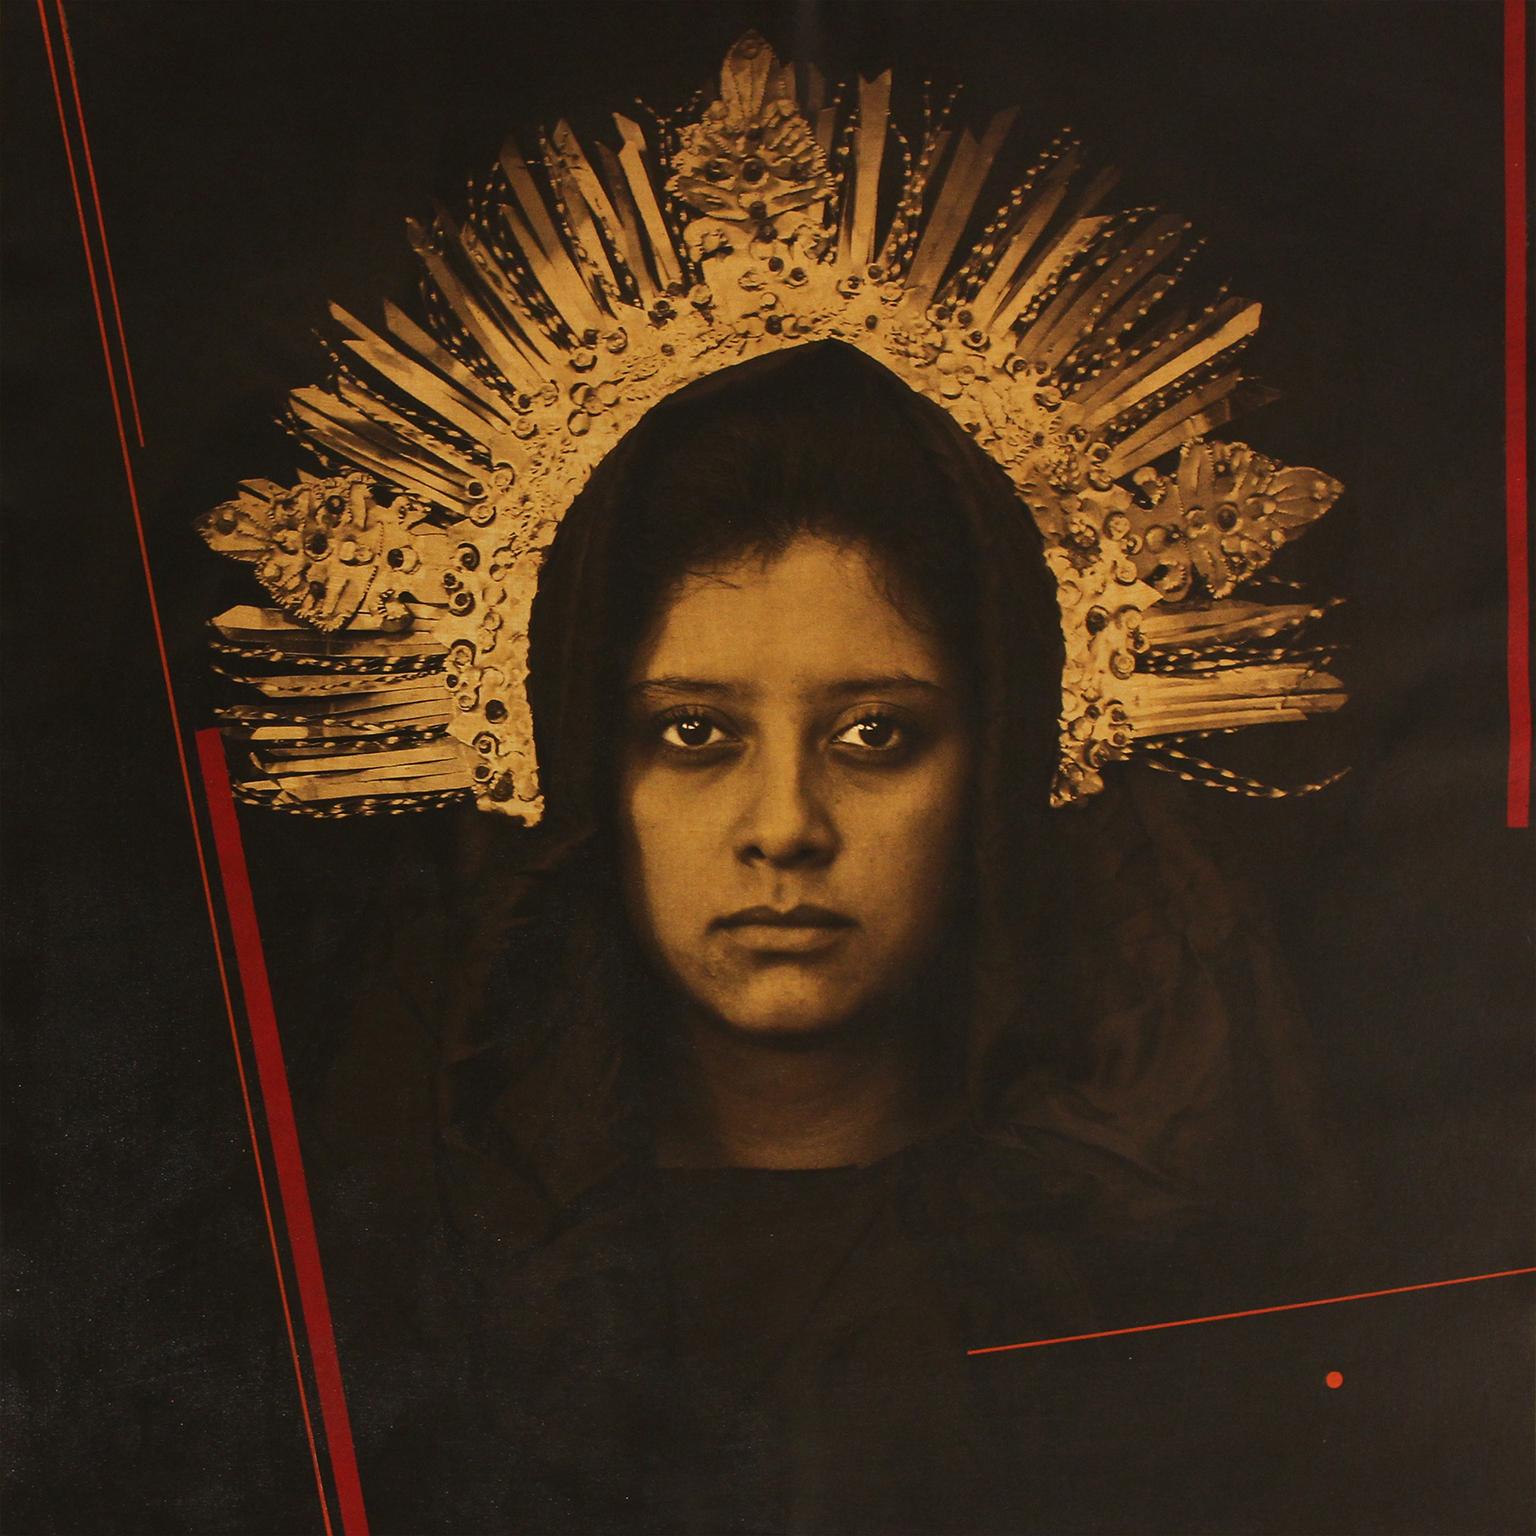 Luis Gonzalez Palma Portrait Photograph - "Mobius - Virginal" photograph on canvas, woman with crown